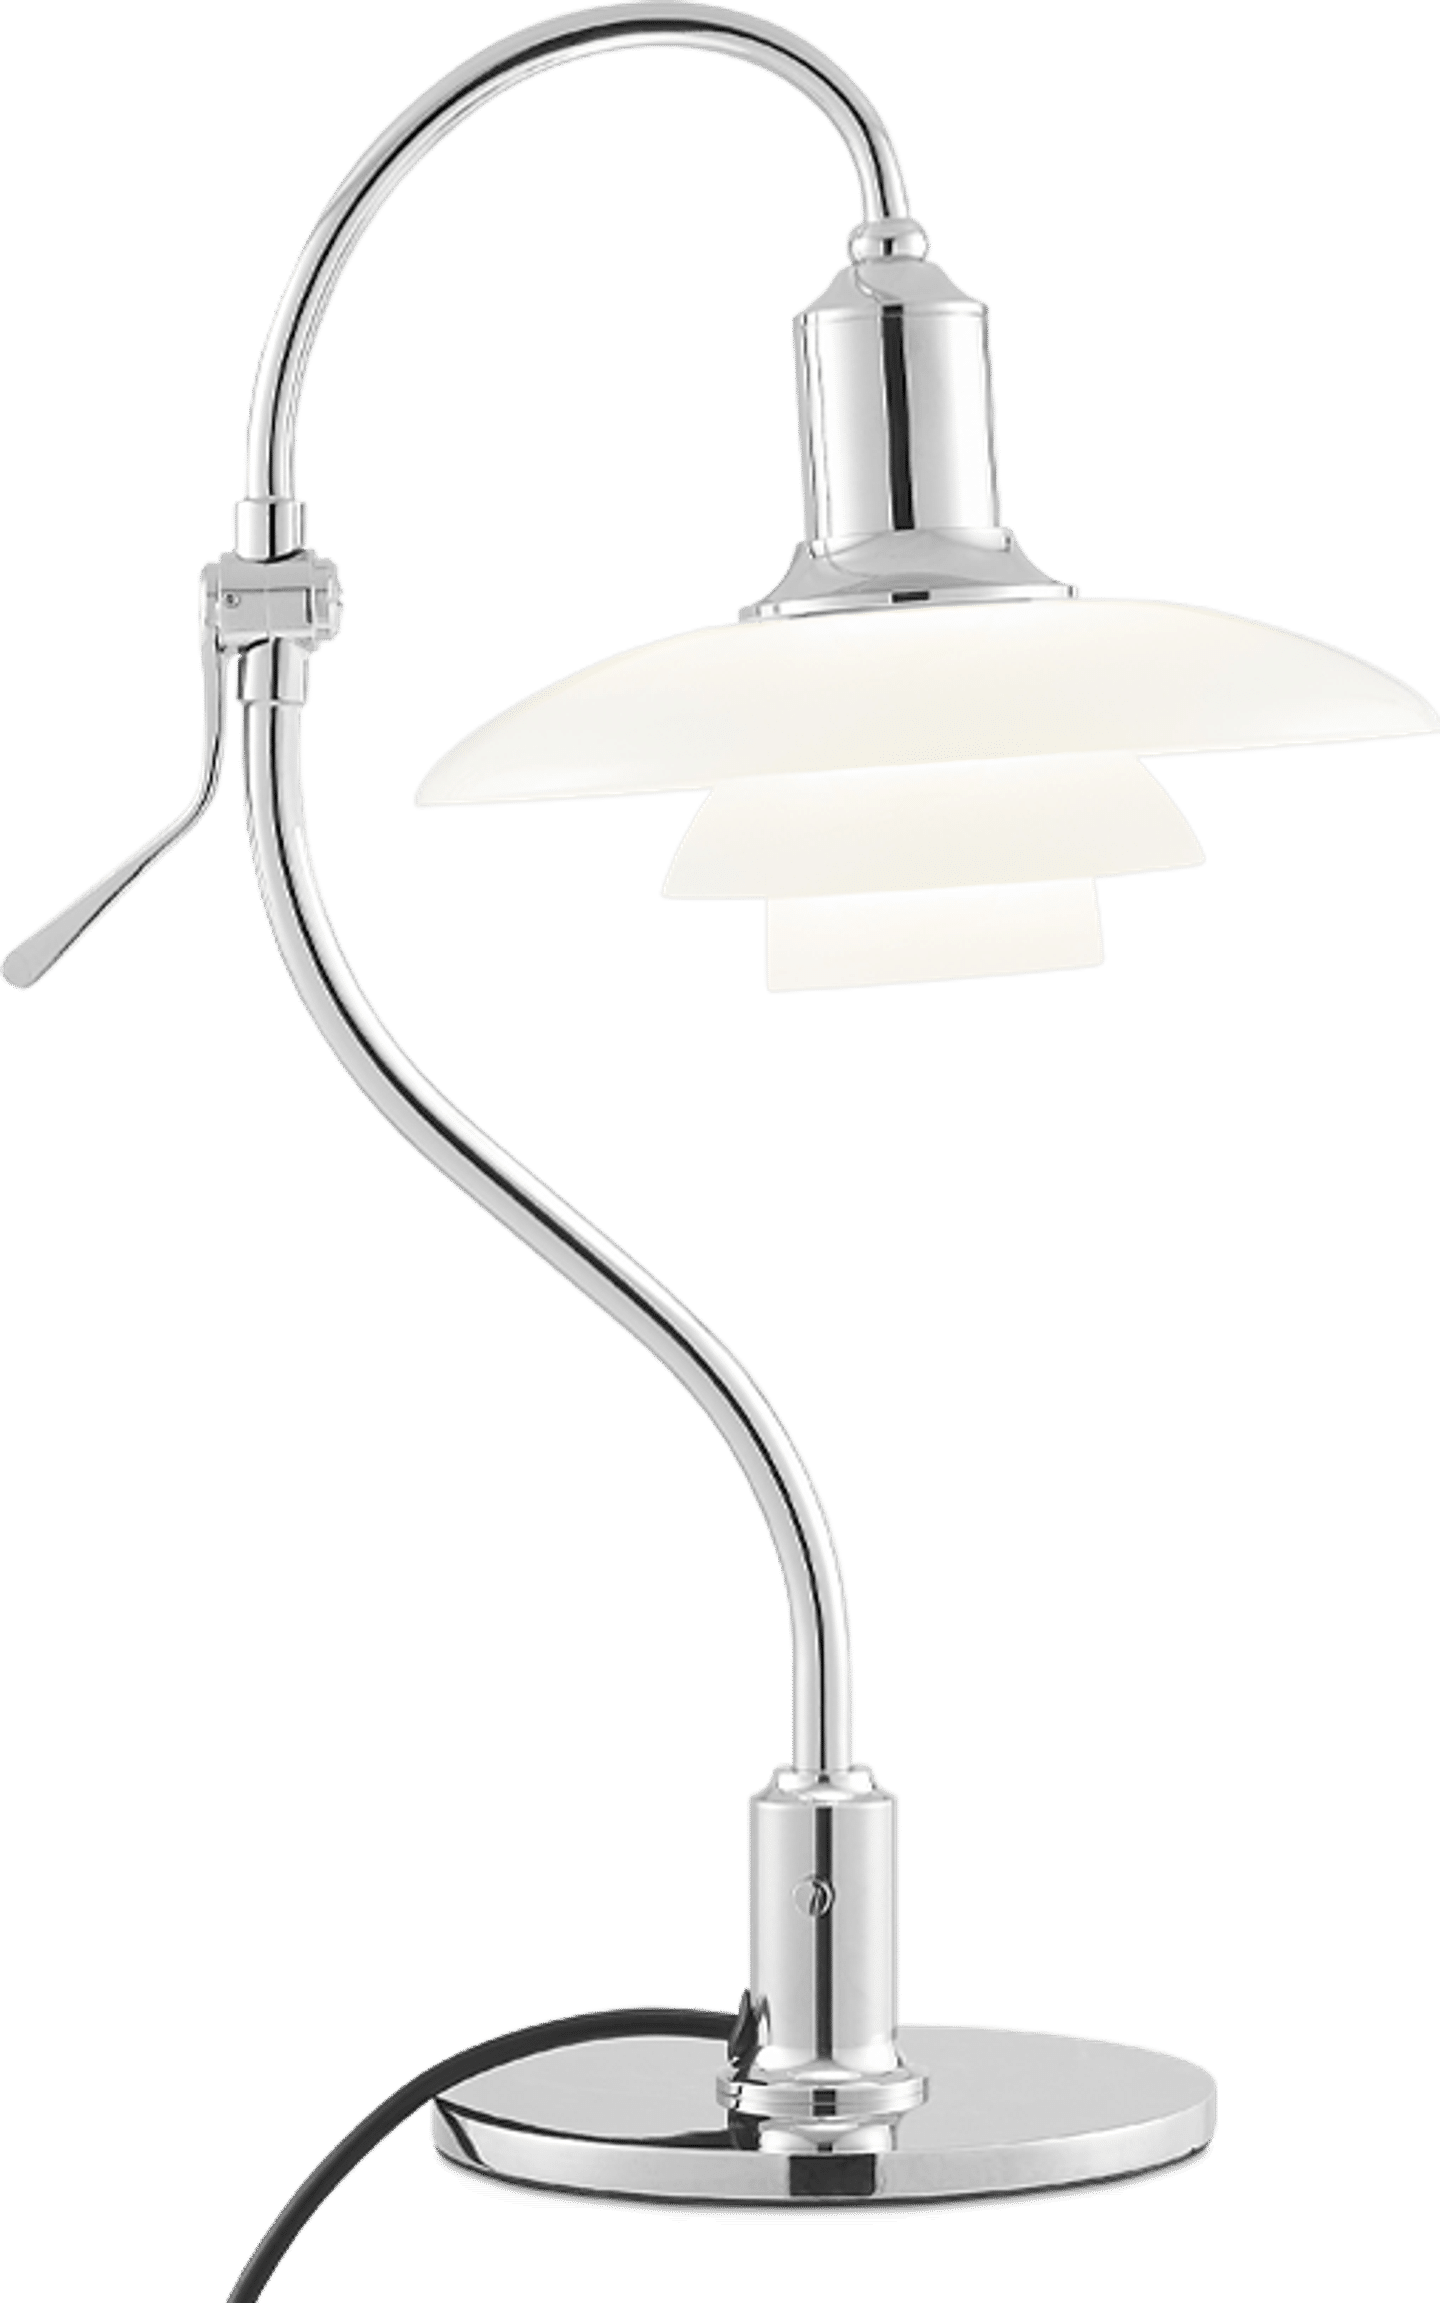 PH 2-2 Lámpara de mesa estilo signo de interrogación Chrome image.